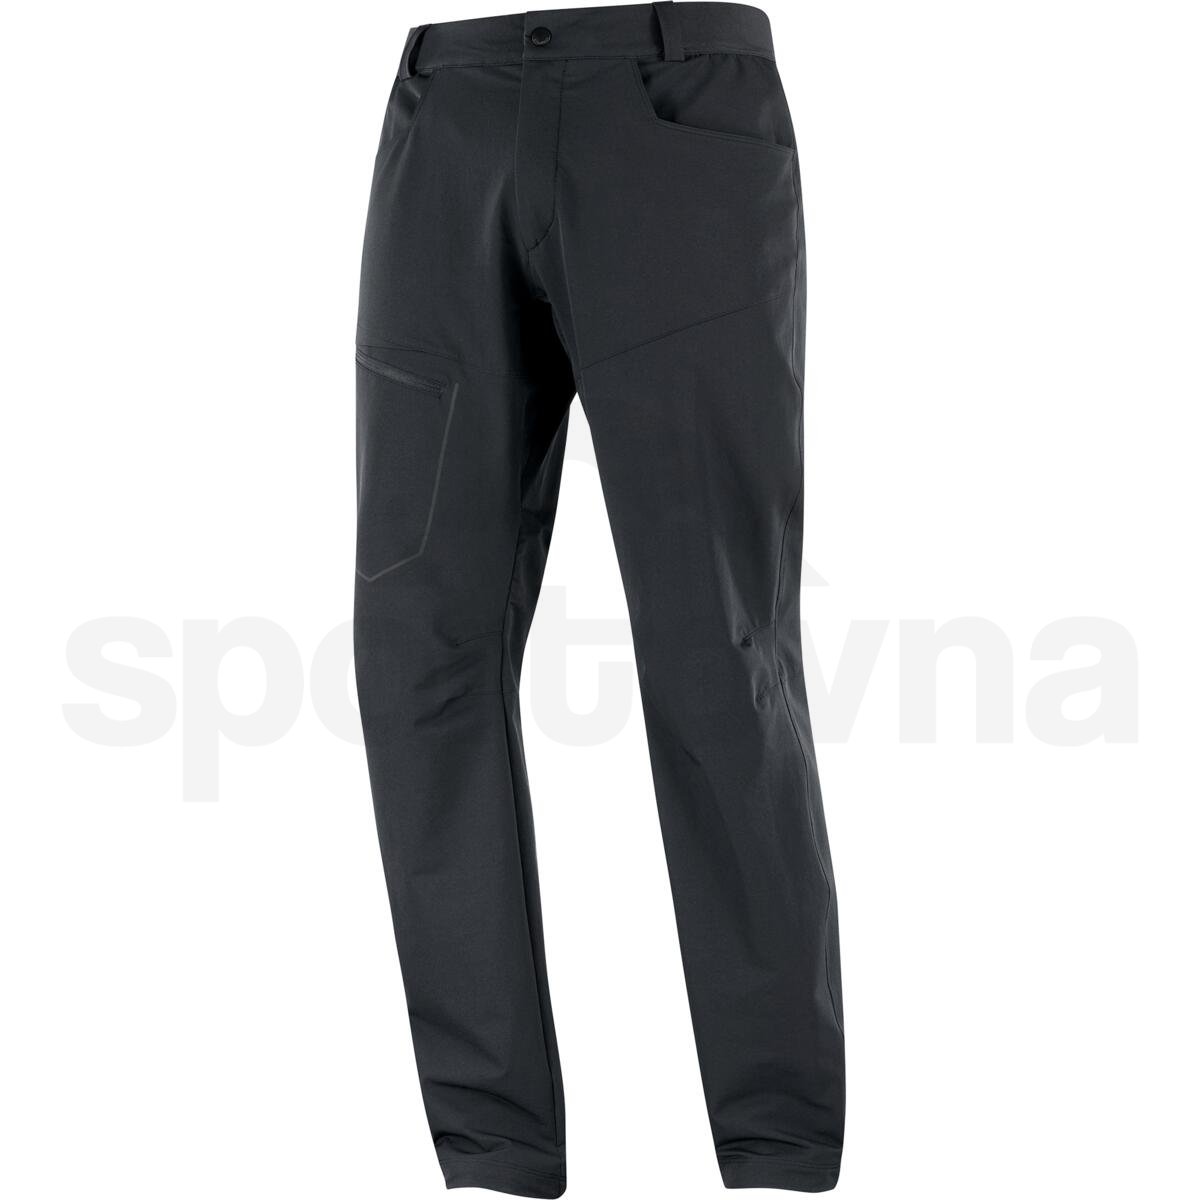 Kalhoty Salomon Wayfarer Warm Pants M - černá (prodloužená délka)